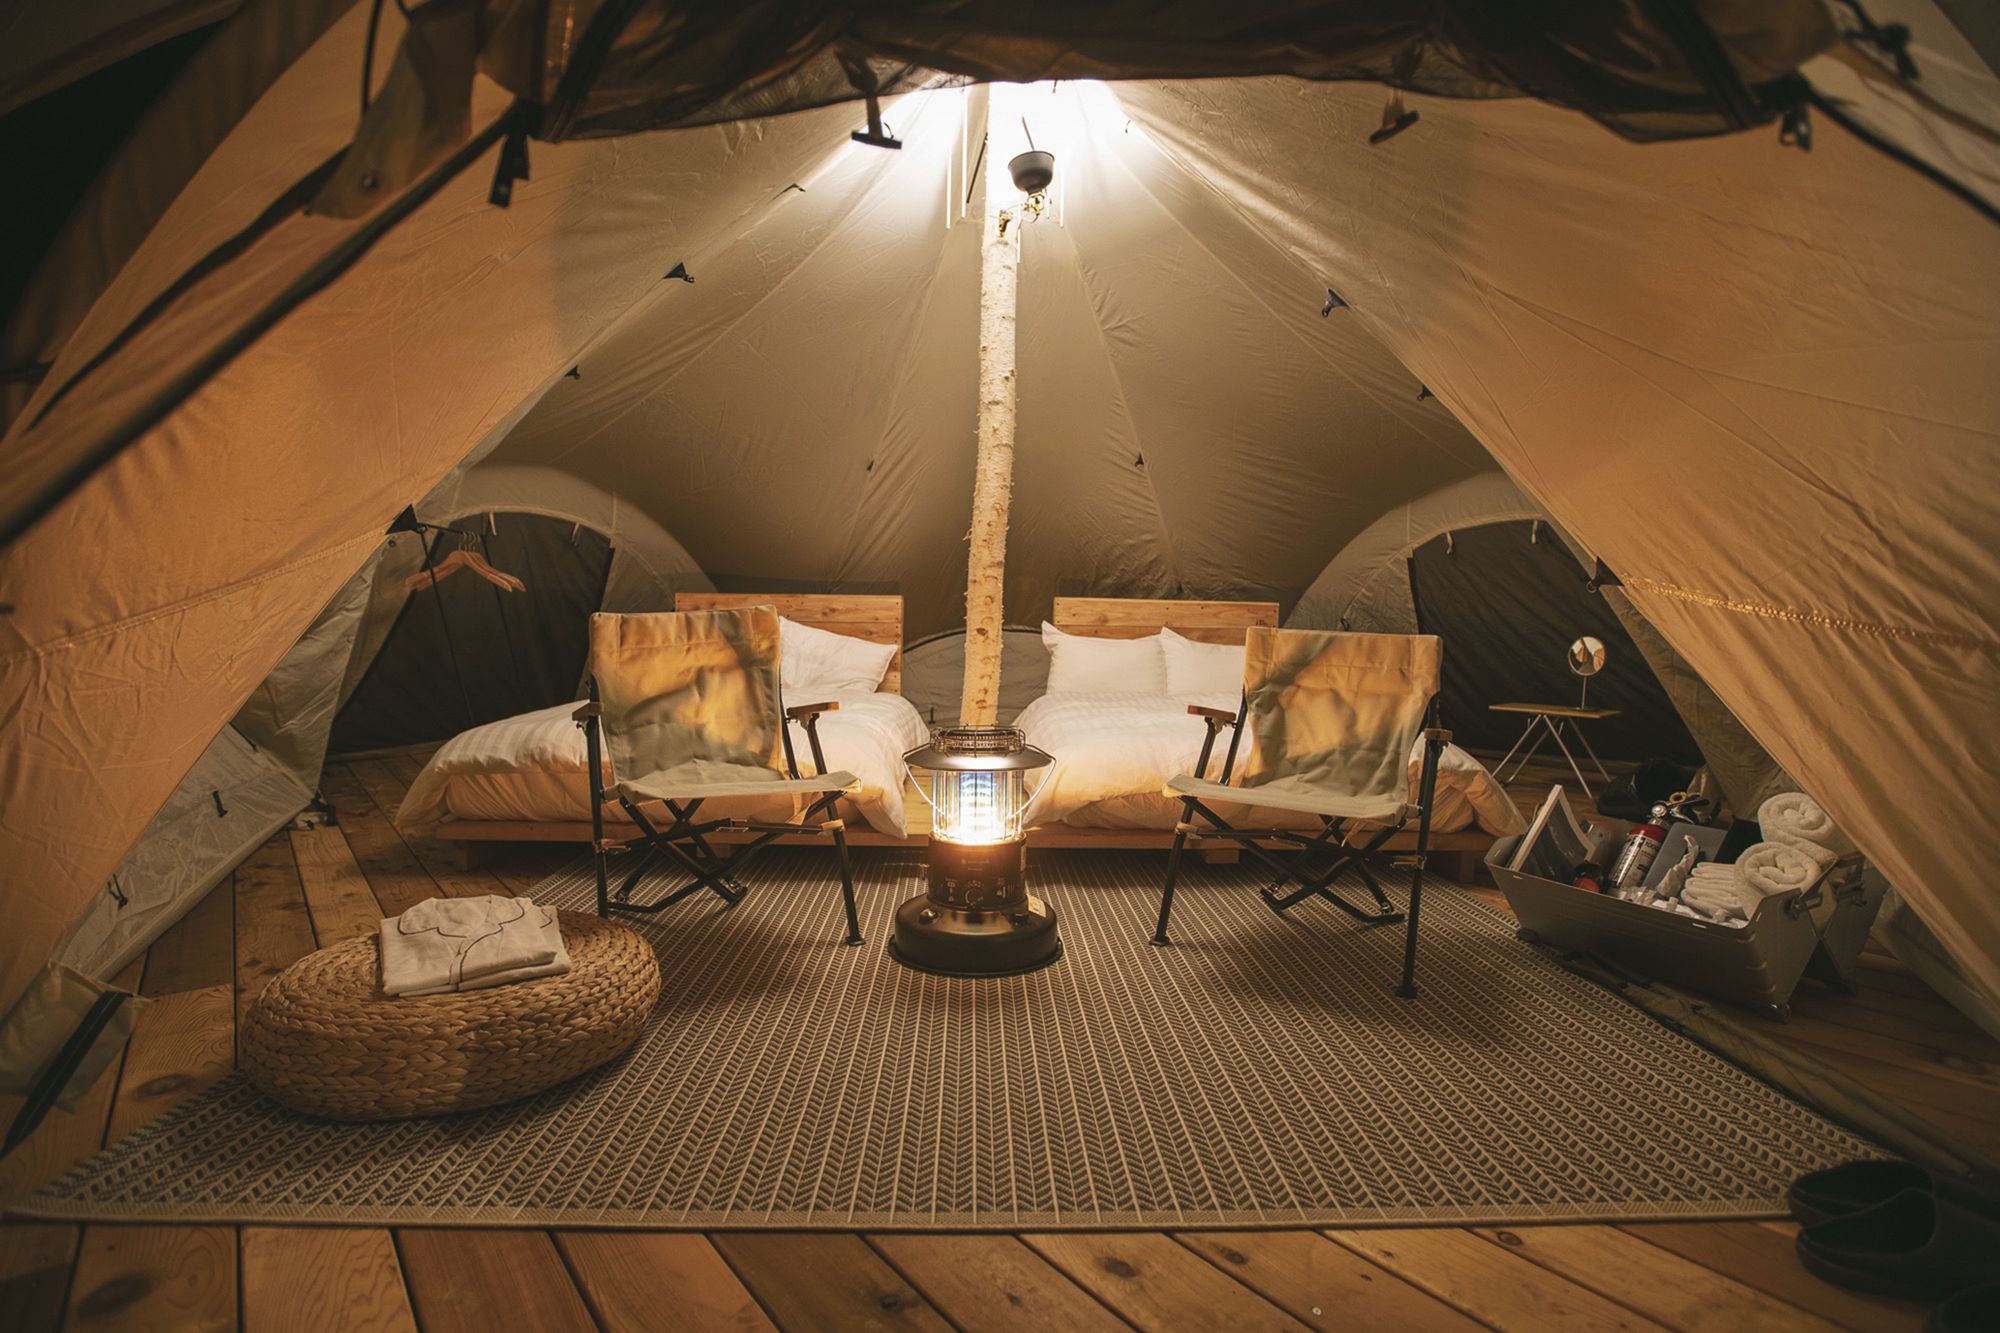 ダブルサイズベッド２台が設置された特別仕様のテント内。ランプの灯りが優しく照らす。